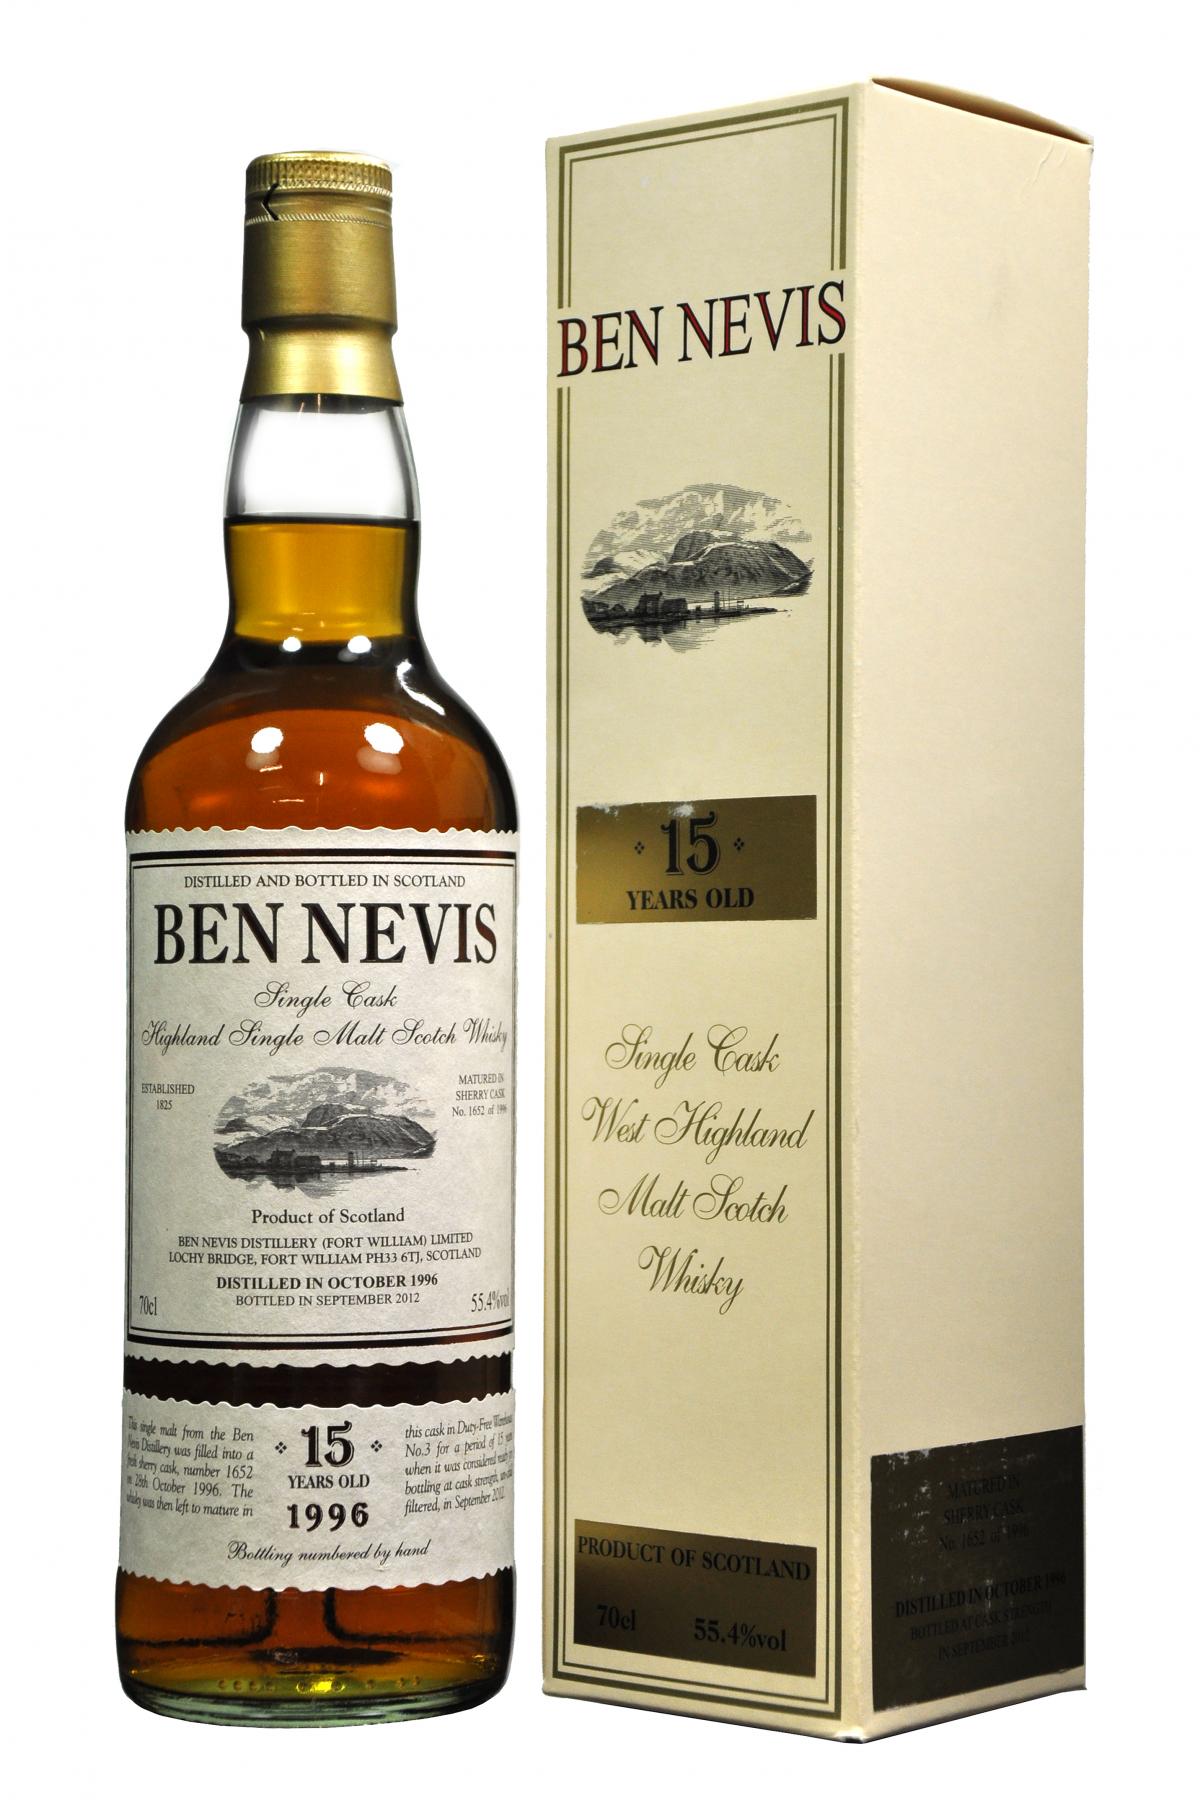 ben nevis 15 year old single cask, highland single malt scotch whisky